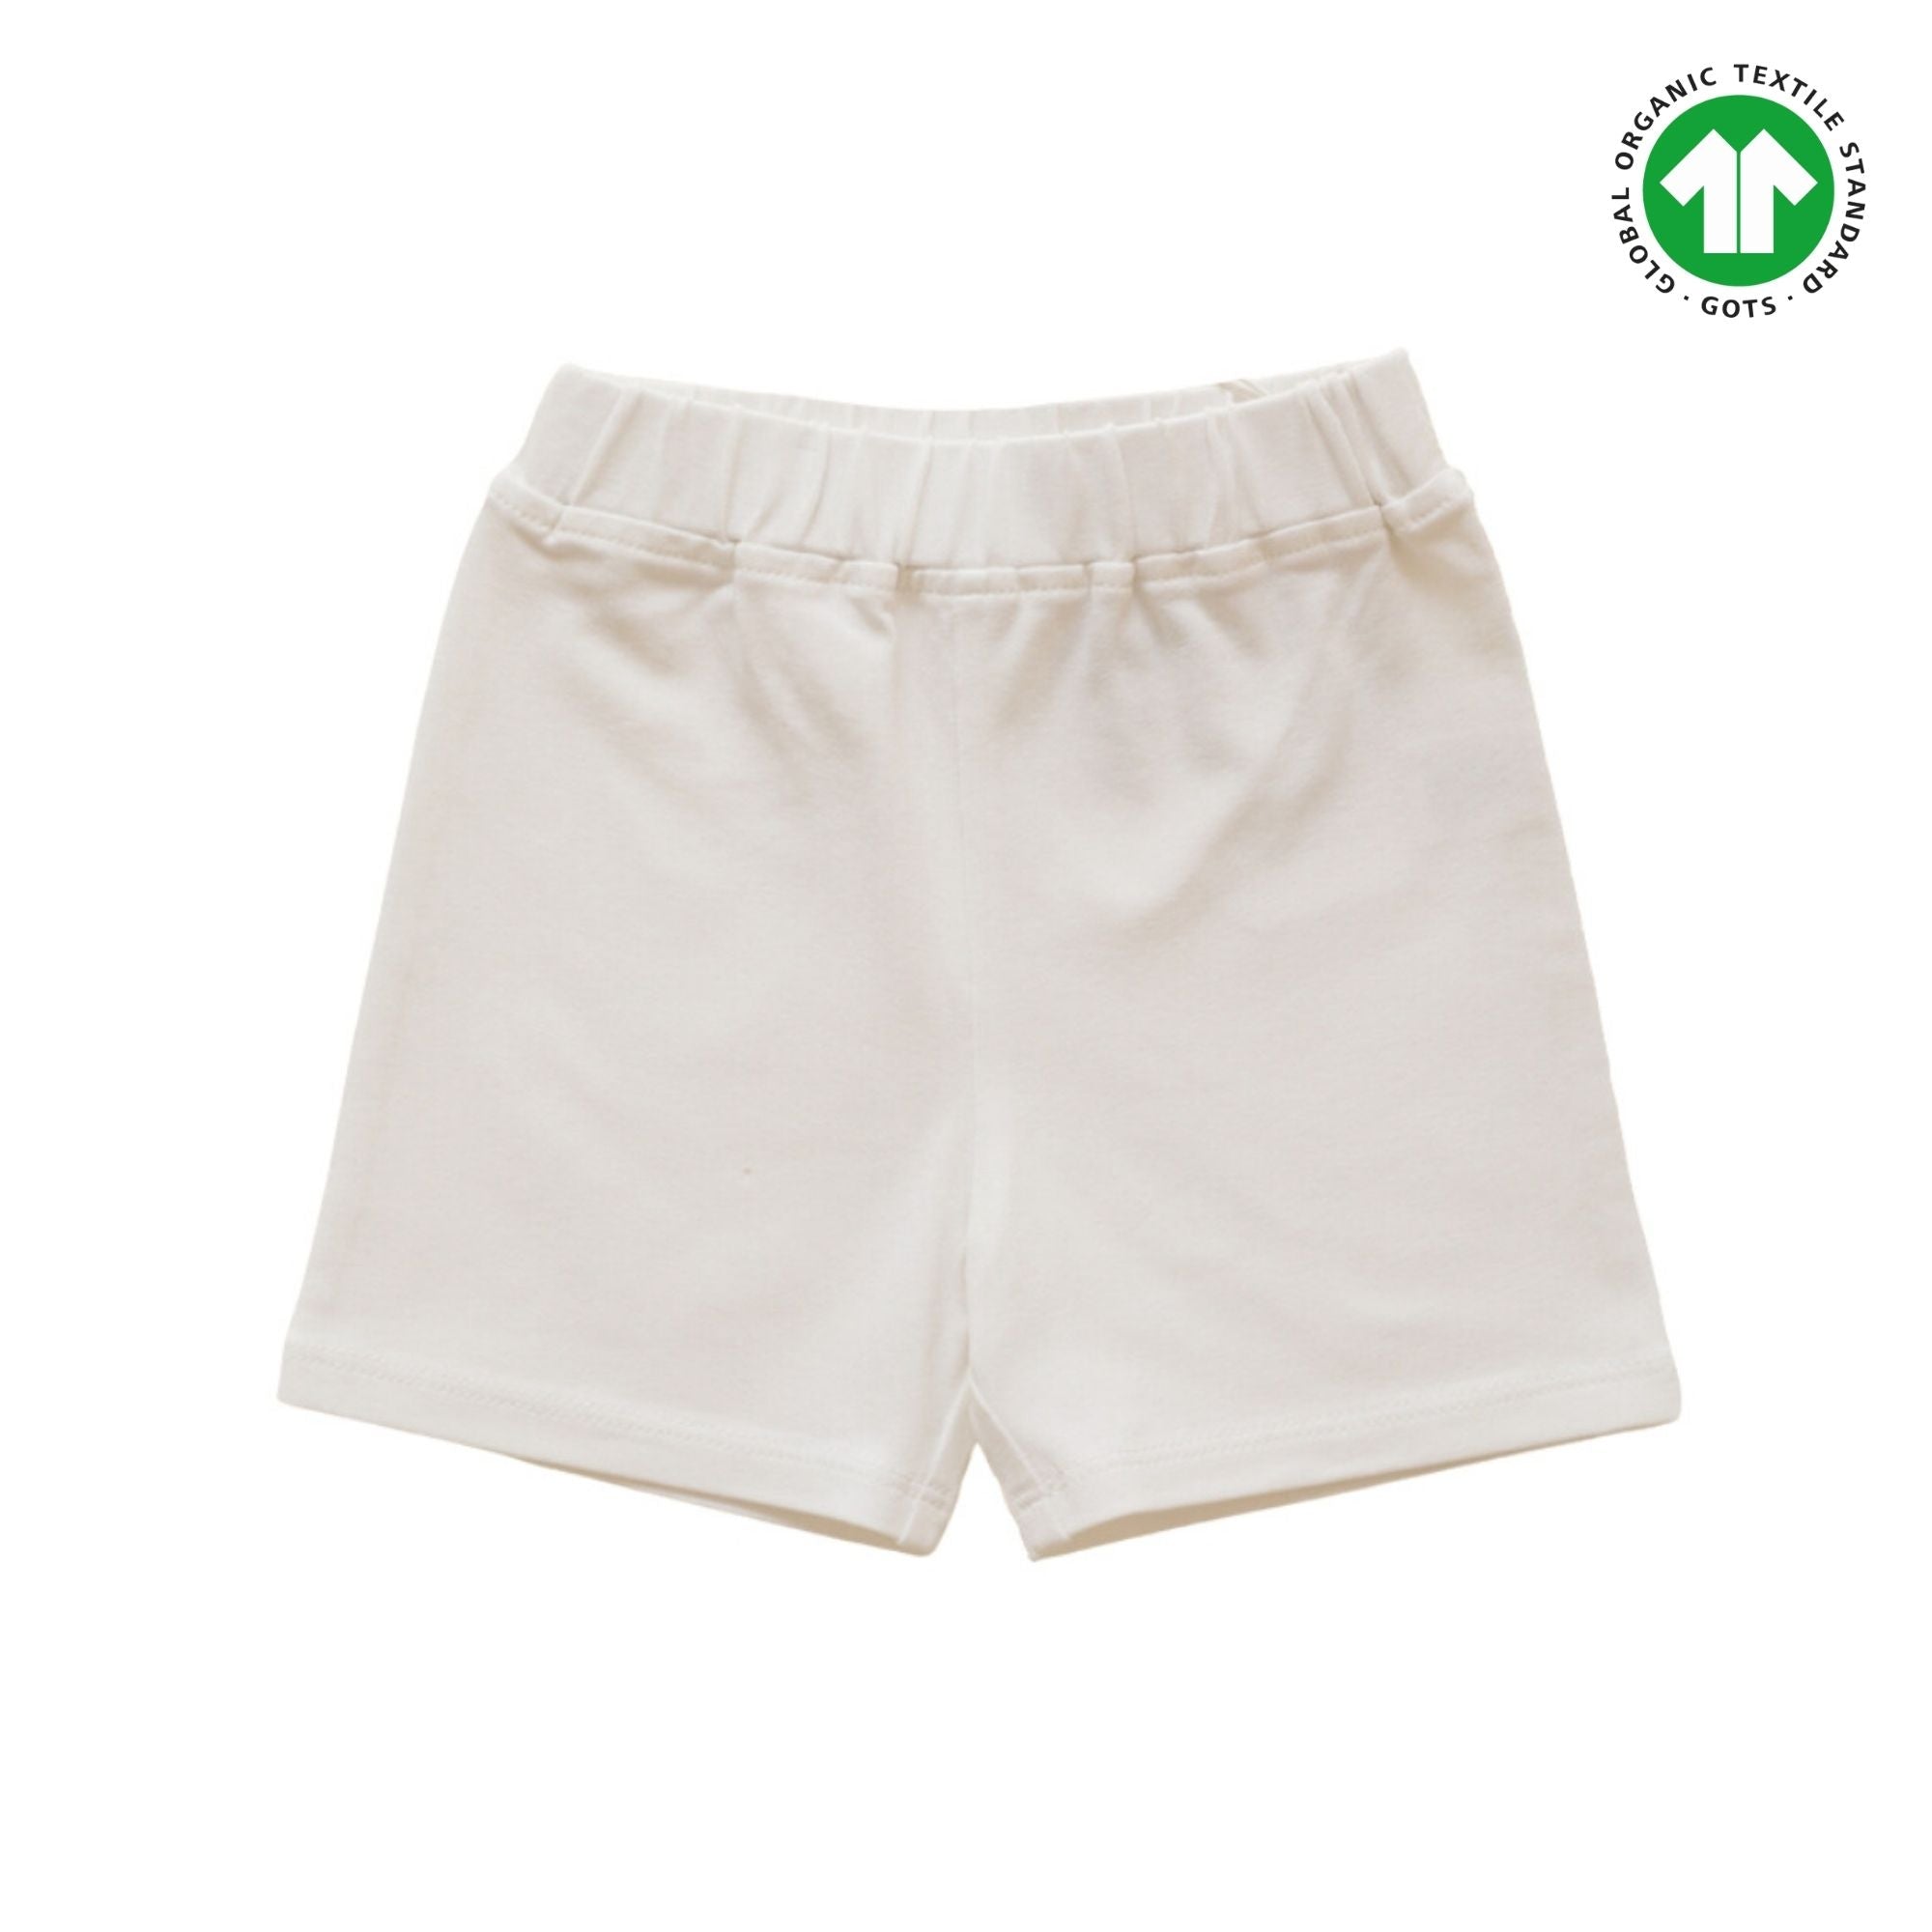 Unisex shorts